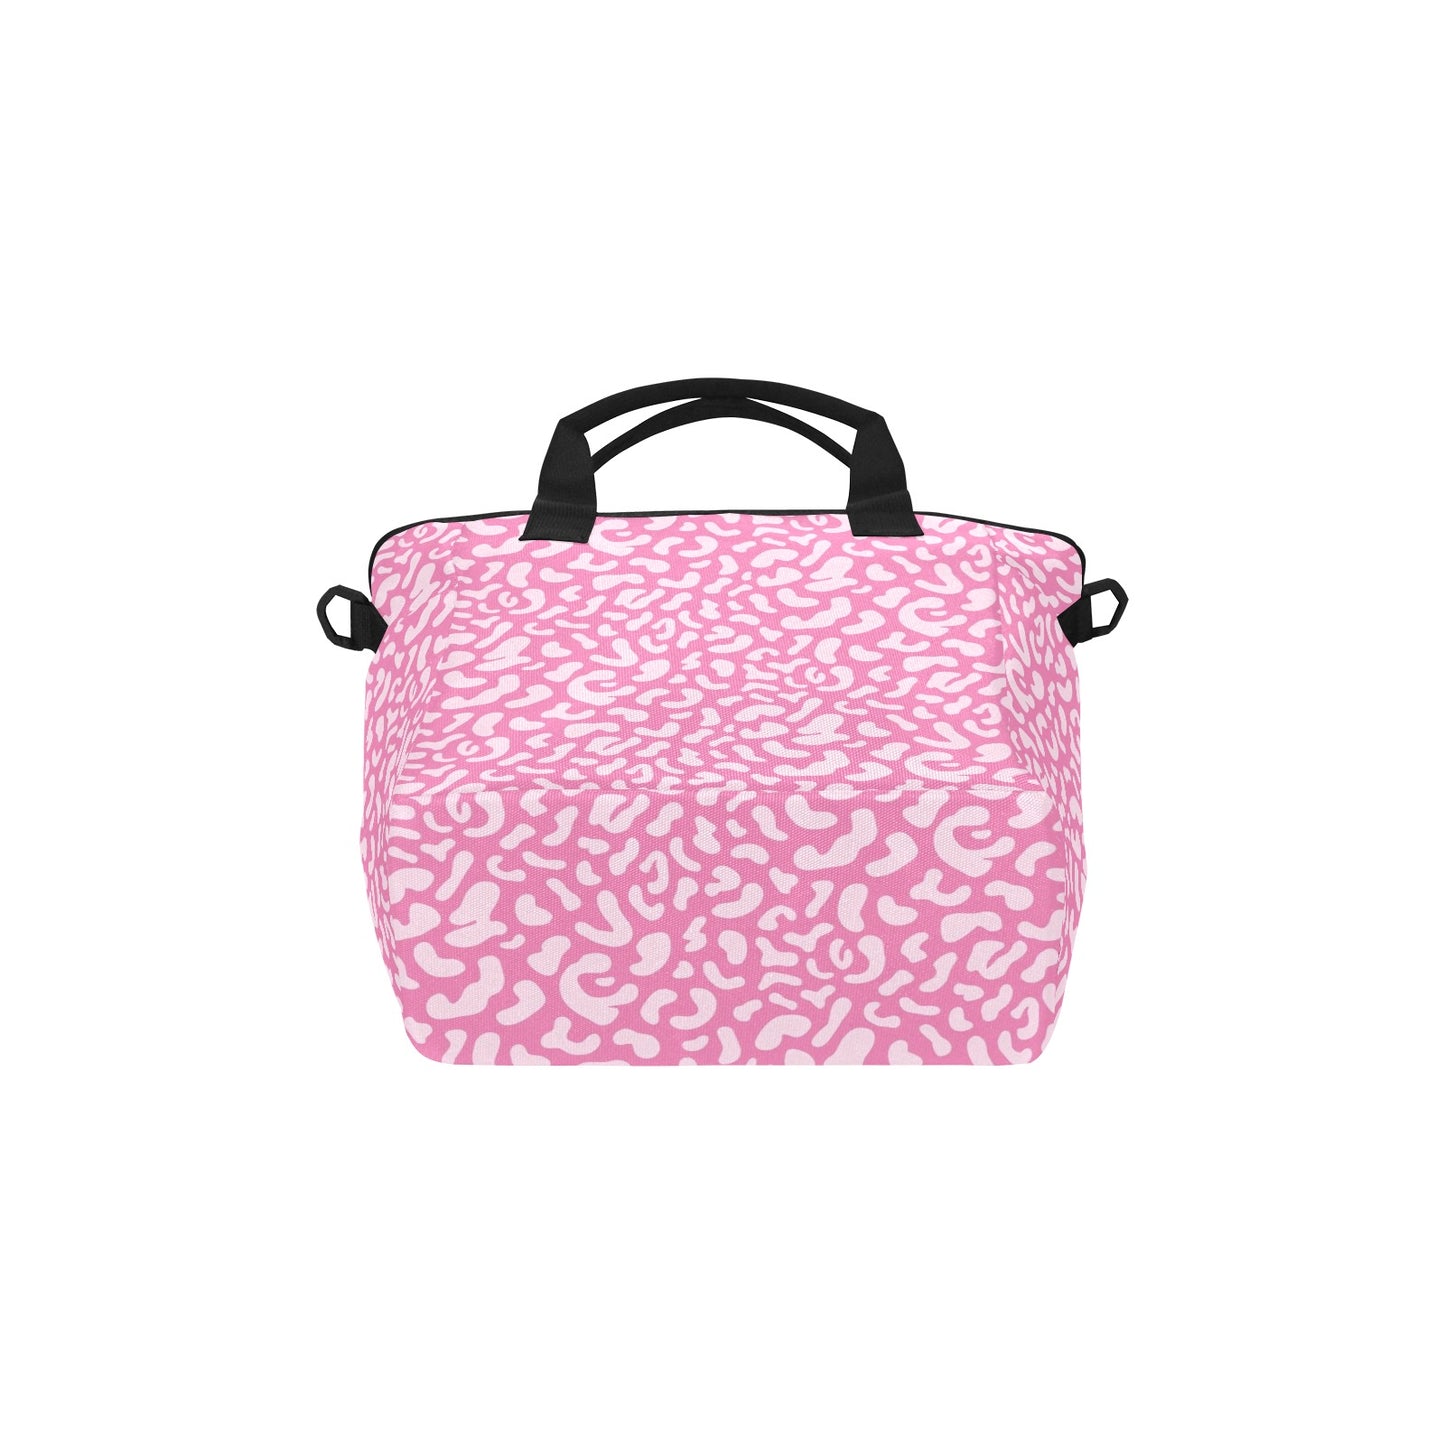 Pink Leopard - Tote Bag with Shoulder Strap Nylon Tote Bag